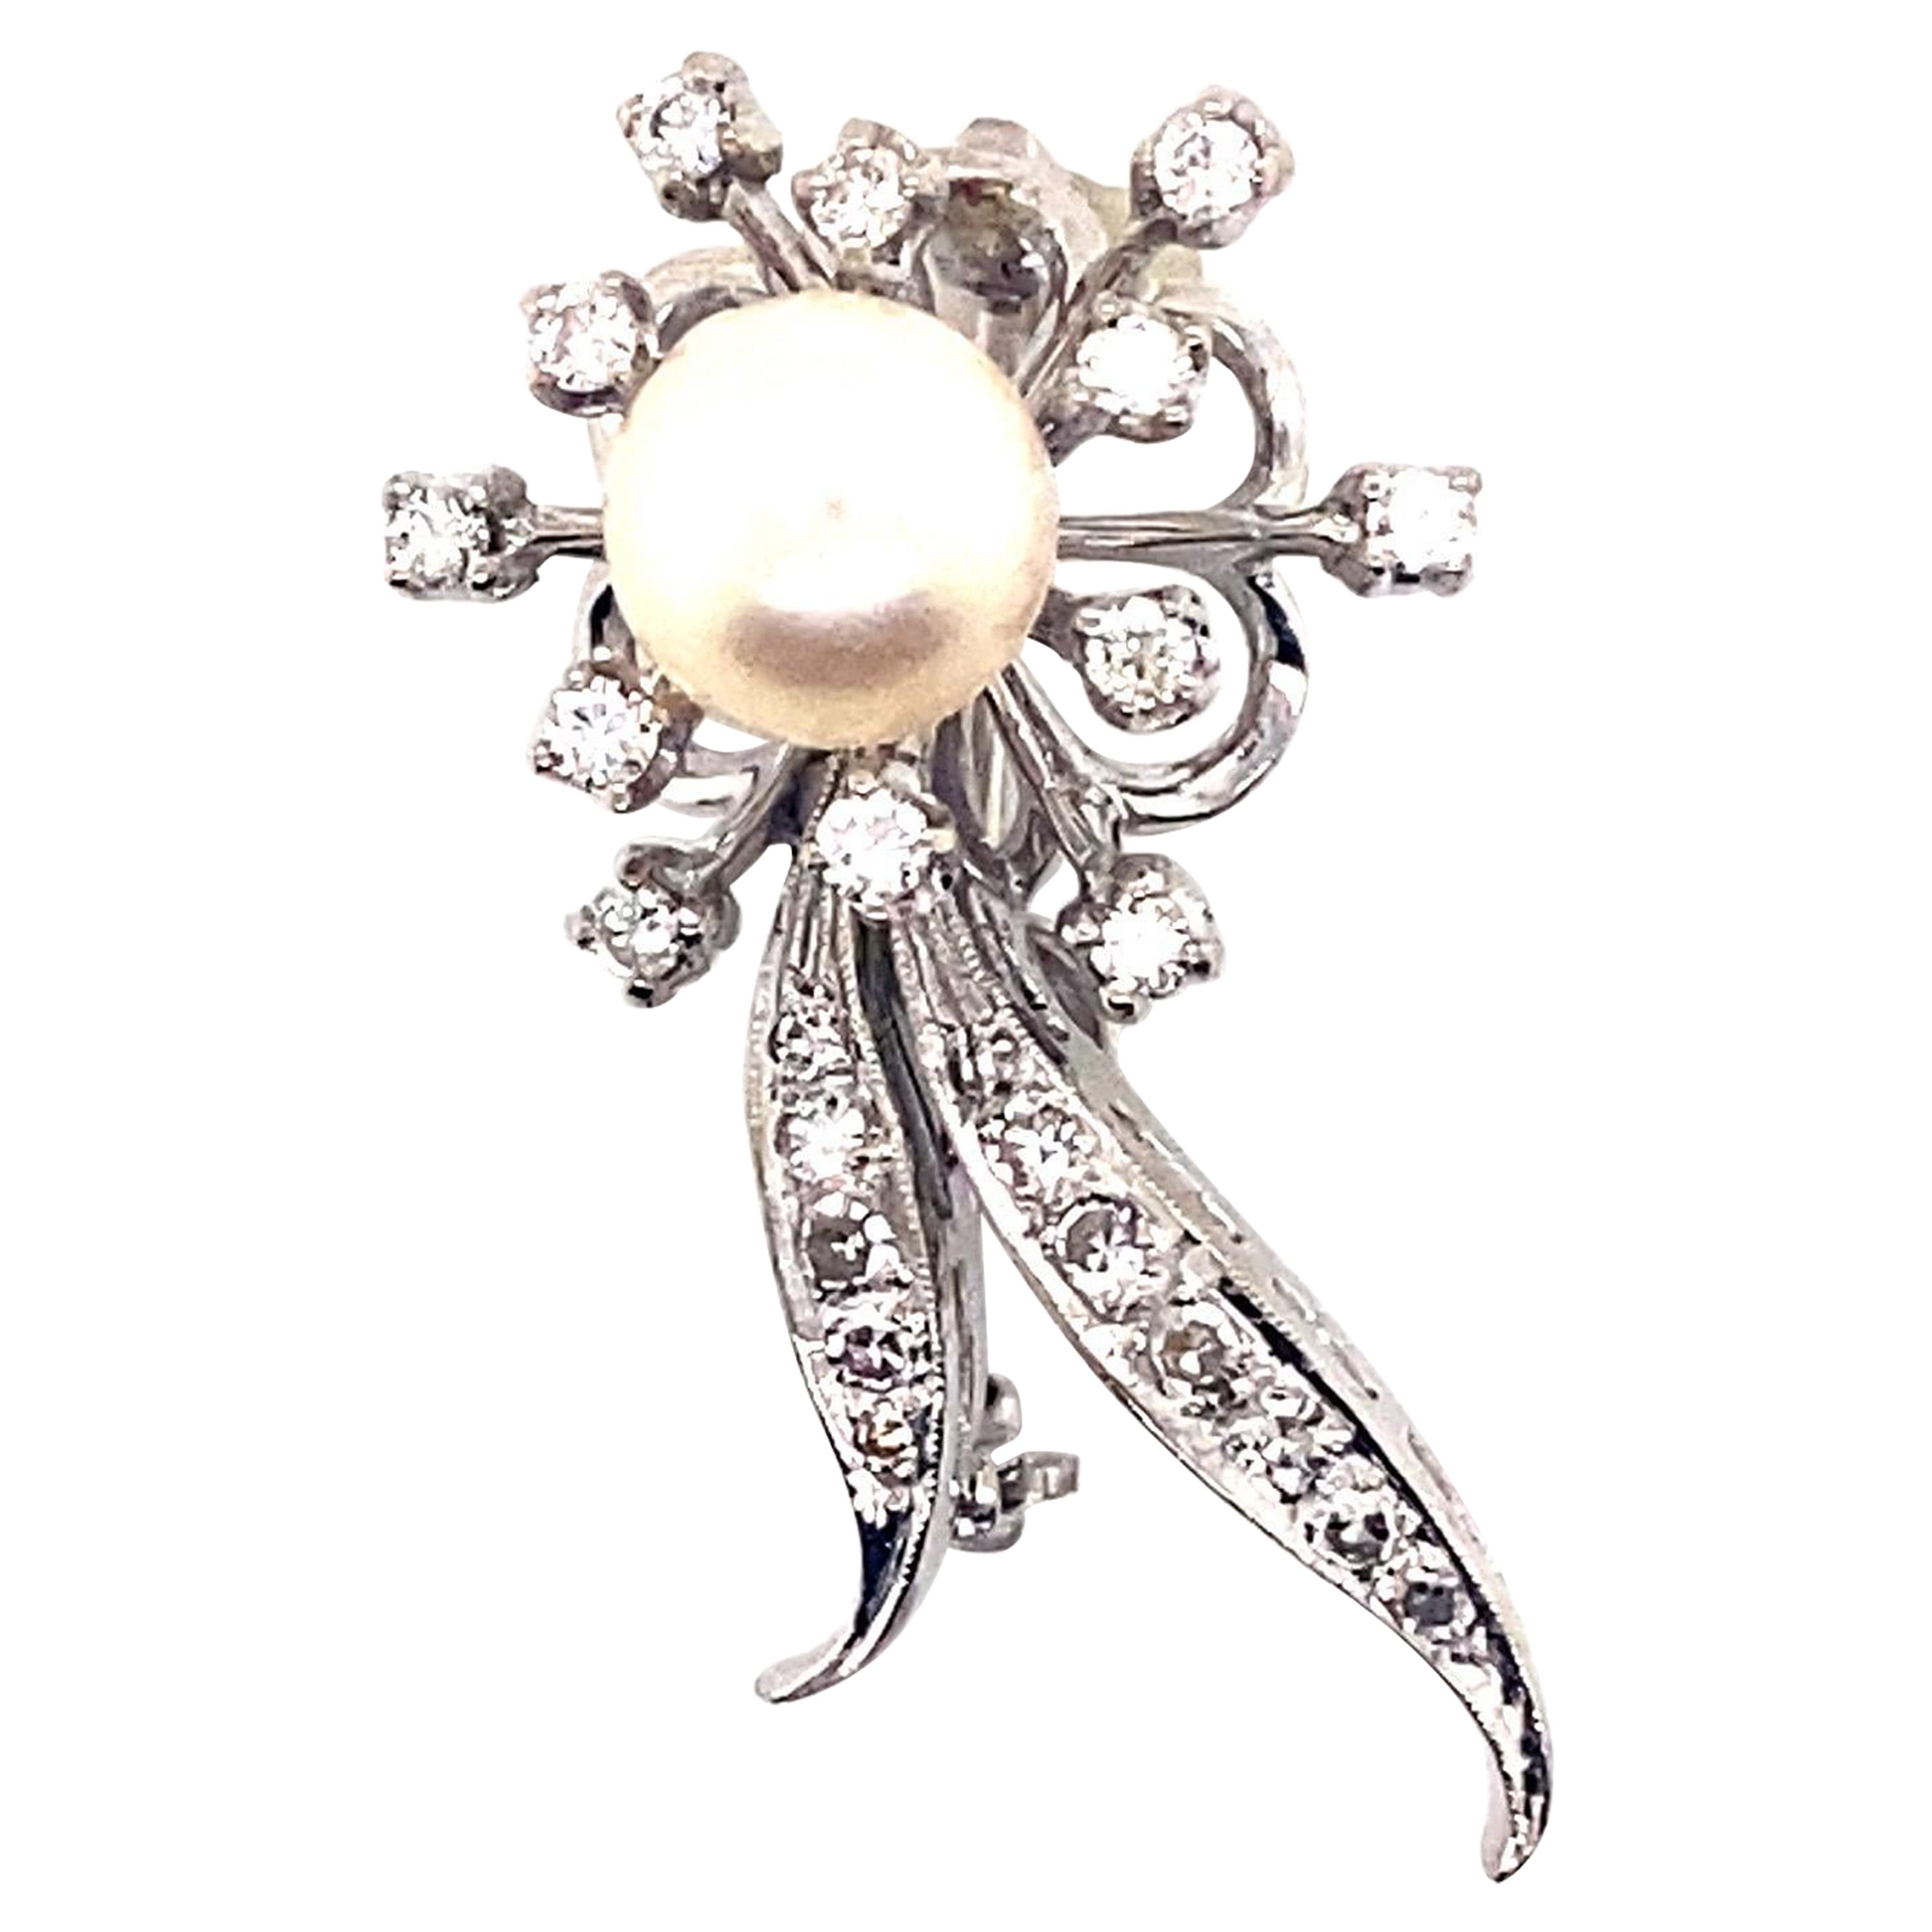 Anstecknadel, 14kw Diamant und Perle, floral, 1950er Jahre